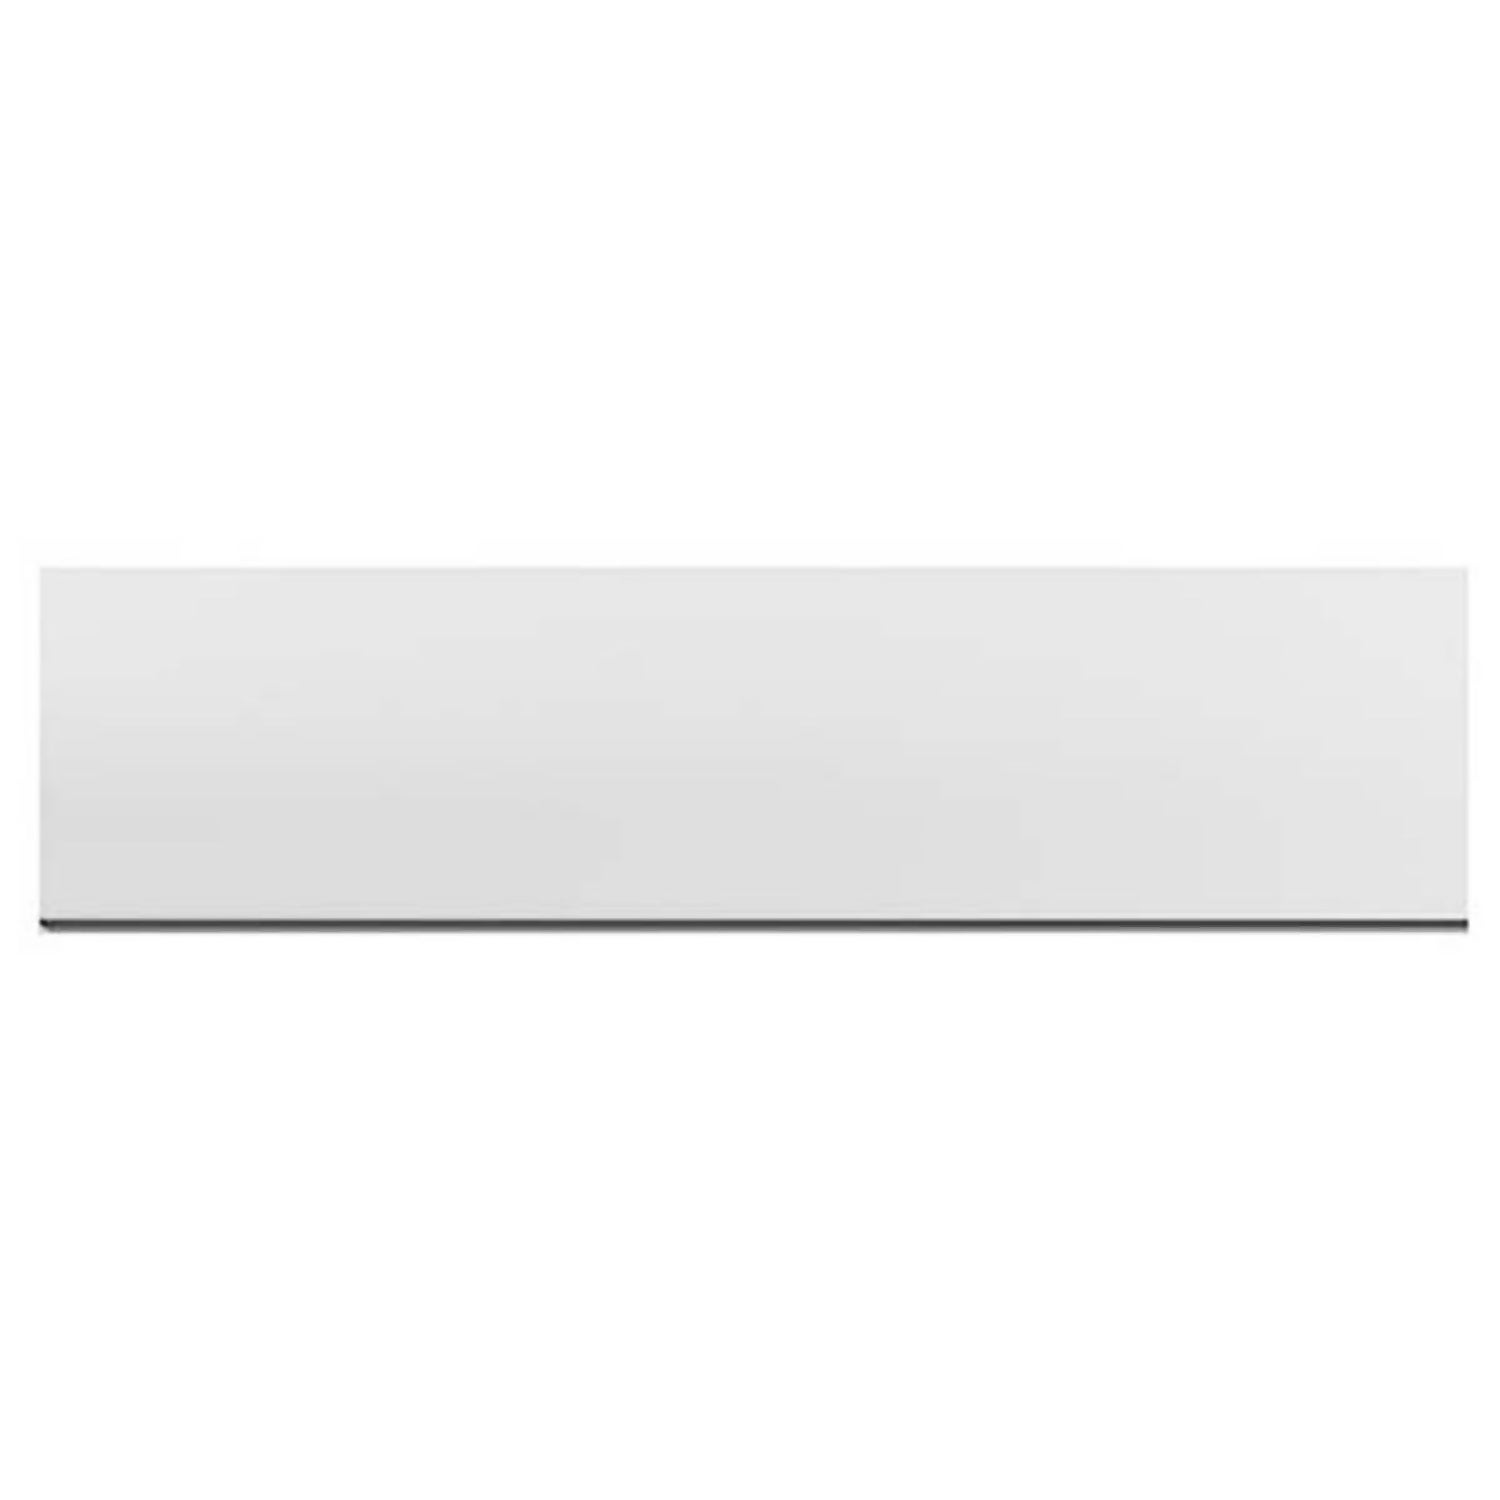 Premiercast Bath Panel Front 1800mm - White